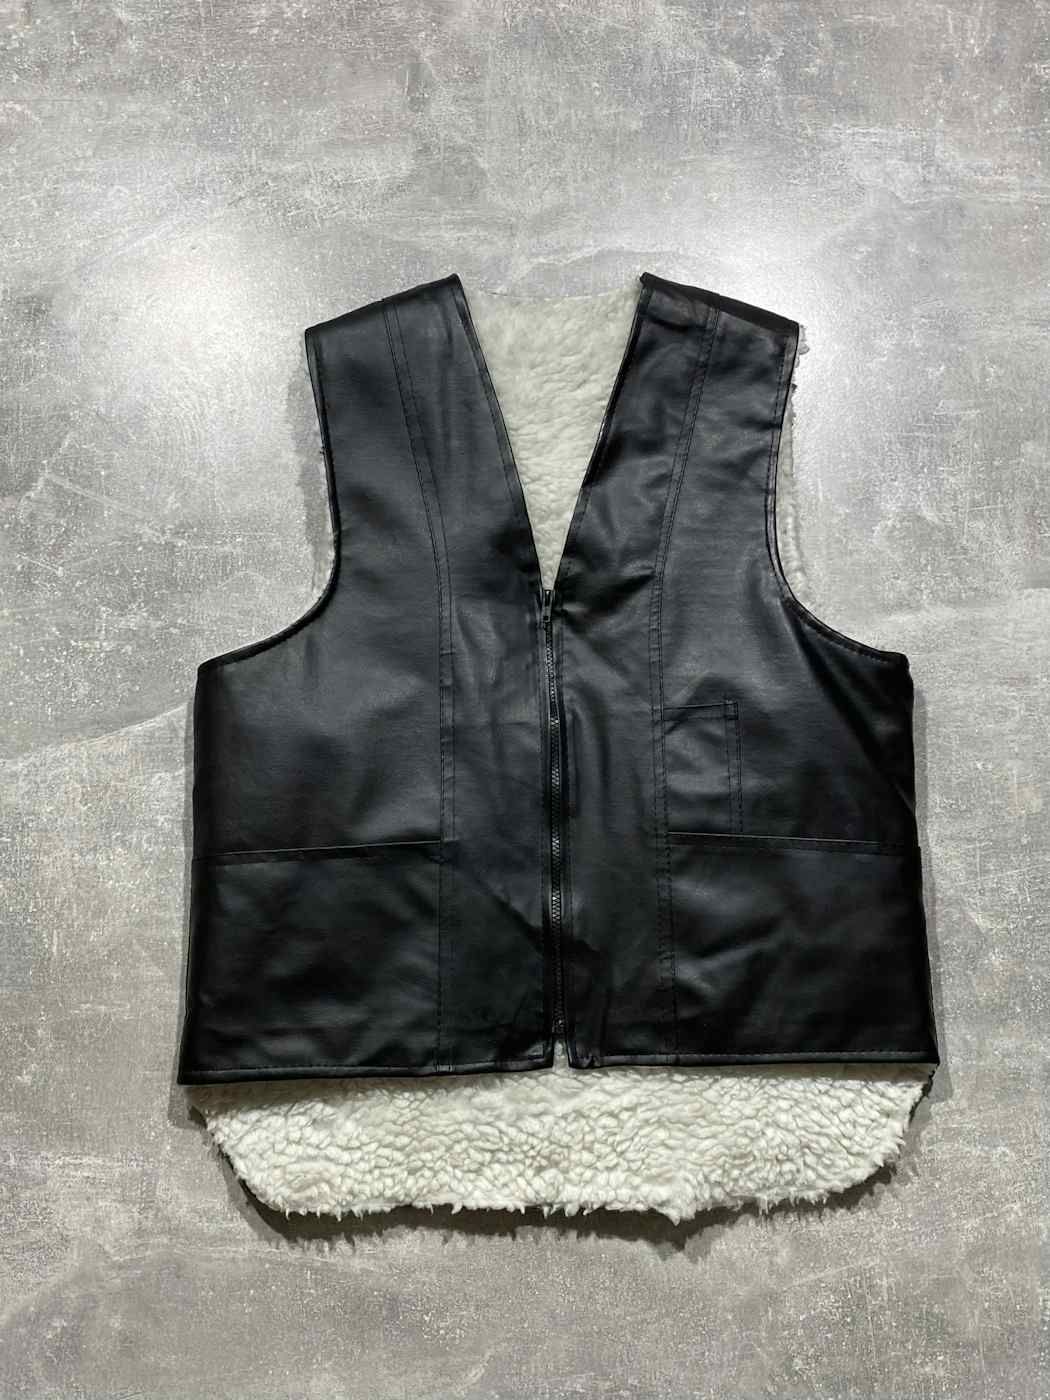 Pre-owned Avant Garde Vintage Vest Jacket Ecco Leather Fur Y2k Japan Style In Black